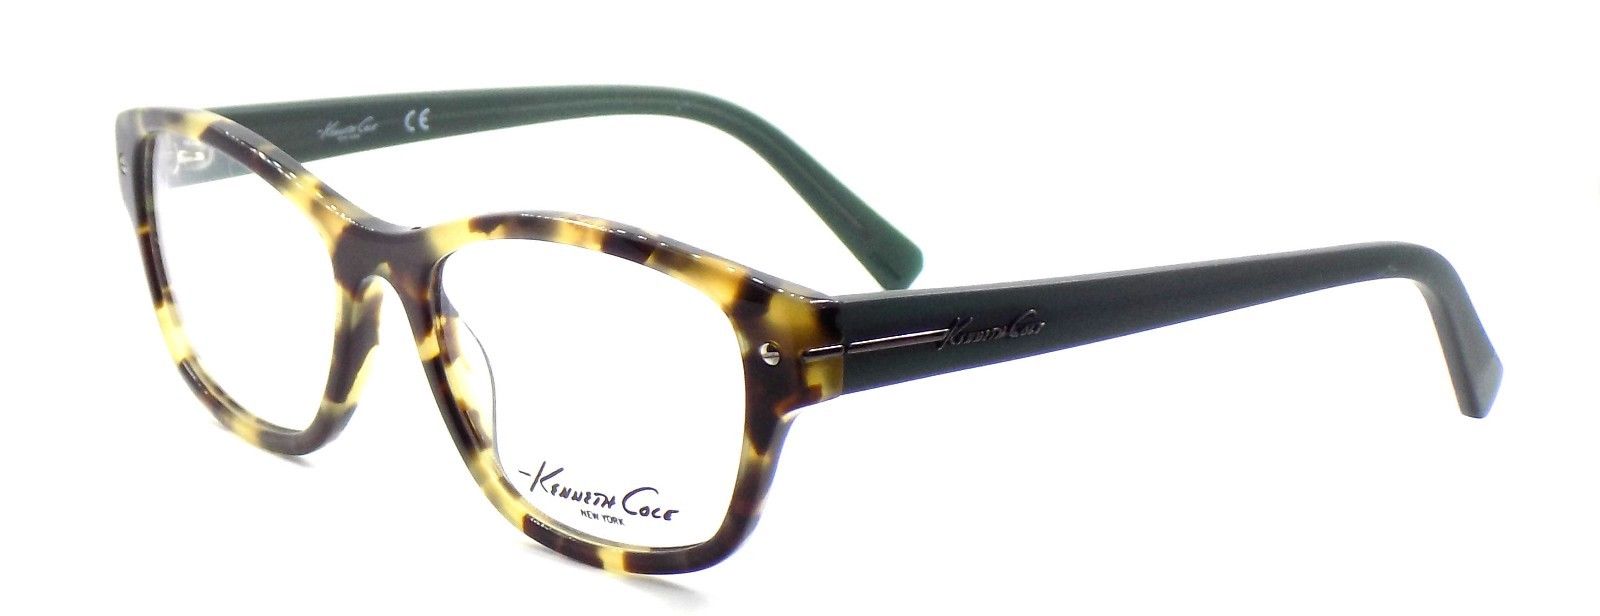 1-Kenneth Cole NY KC0244 053 Women's Eyeglasses 52-17-135 Blonde Havana + CASE-664689815555-IKSpecs